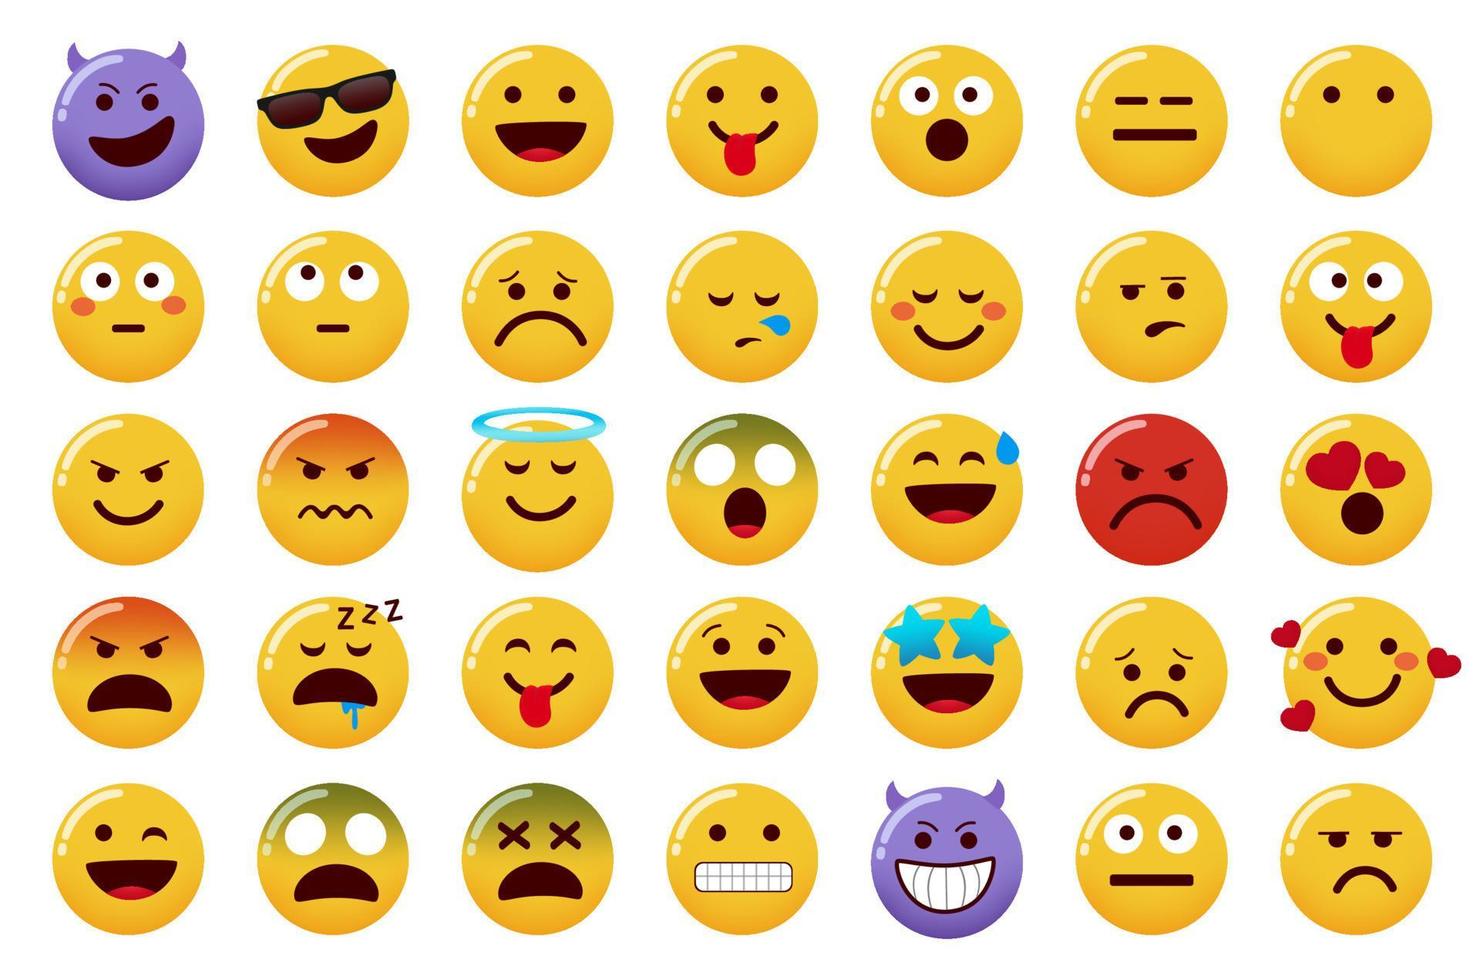 emoticon emojis vector set. emoticons karakter geïsoleerd op een witte achtergrond met lachende, boze, boze en zieke gezichtsuitdrukkingen voor emoji karakters ontwerp. vectorillustratie.